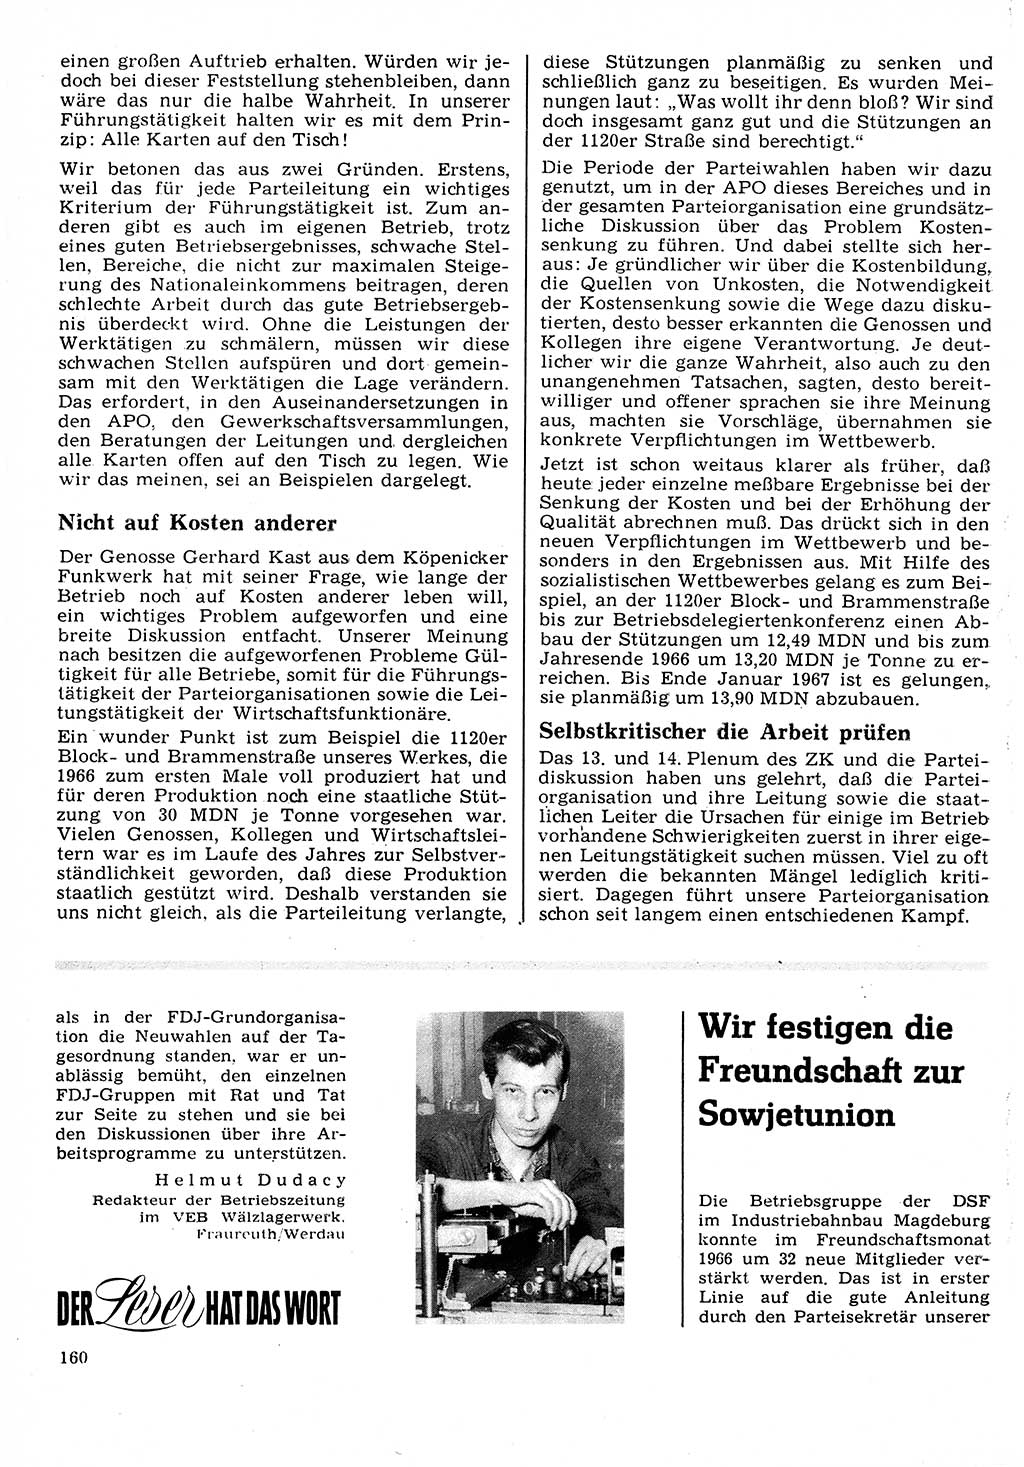 Neuer Weg (NW), Organ des Zentralkomitees (ZK) der SED (Sozialistische Einheitspartei Deutschlands) für Fragen des Parteilebens, 22. Jahrgang [Deutsche Demokratische Republik (DDR)] 1967, Seite 160 (NW ZK SED DDR 1967, S. 160)